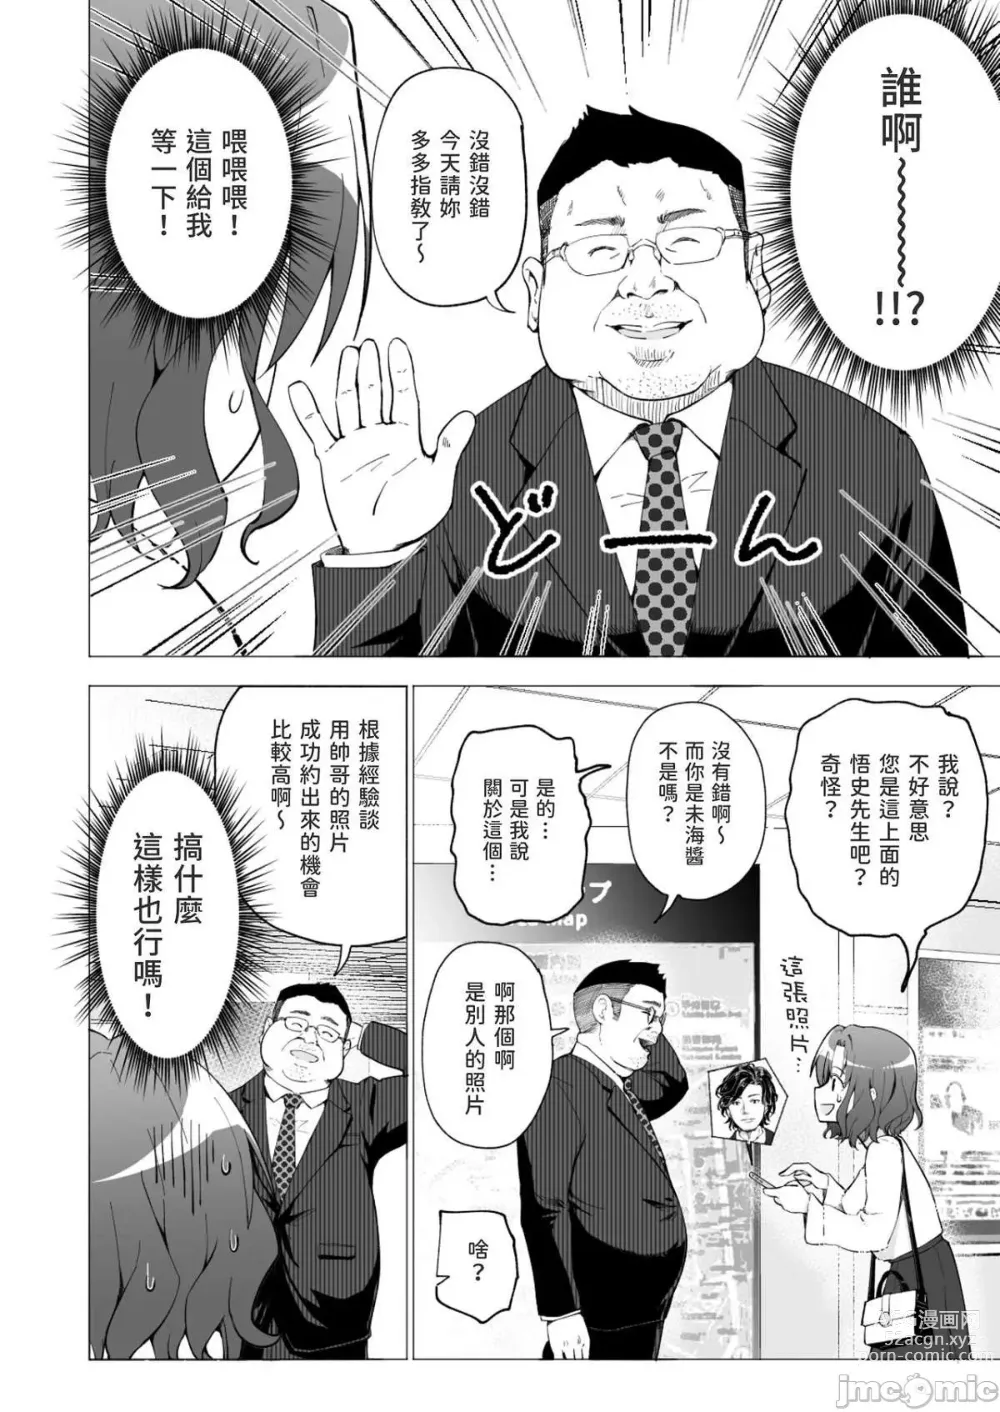 Page 12 of doujinshi Papa Katsu Hajimemashita 1-8 chinese